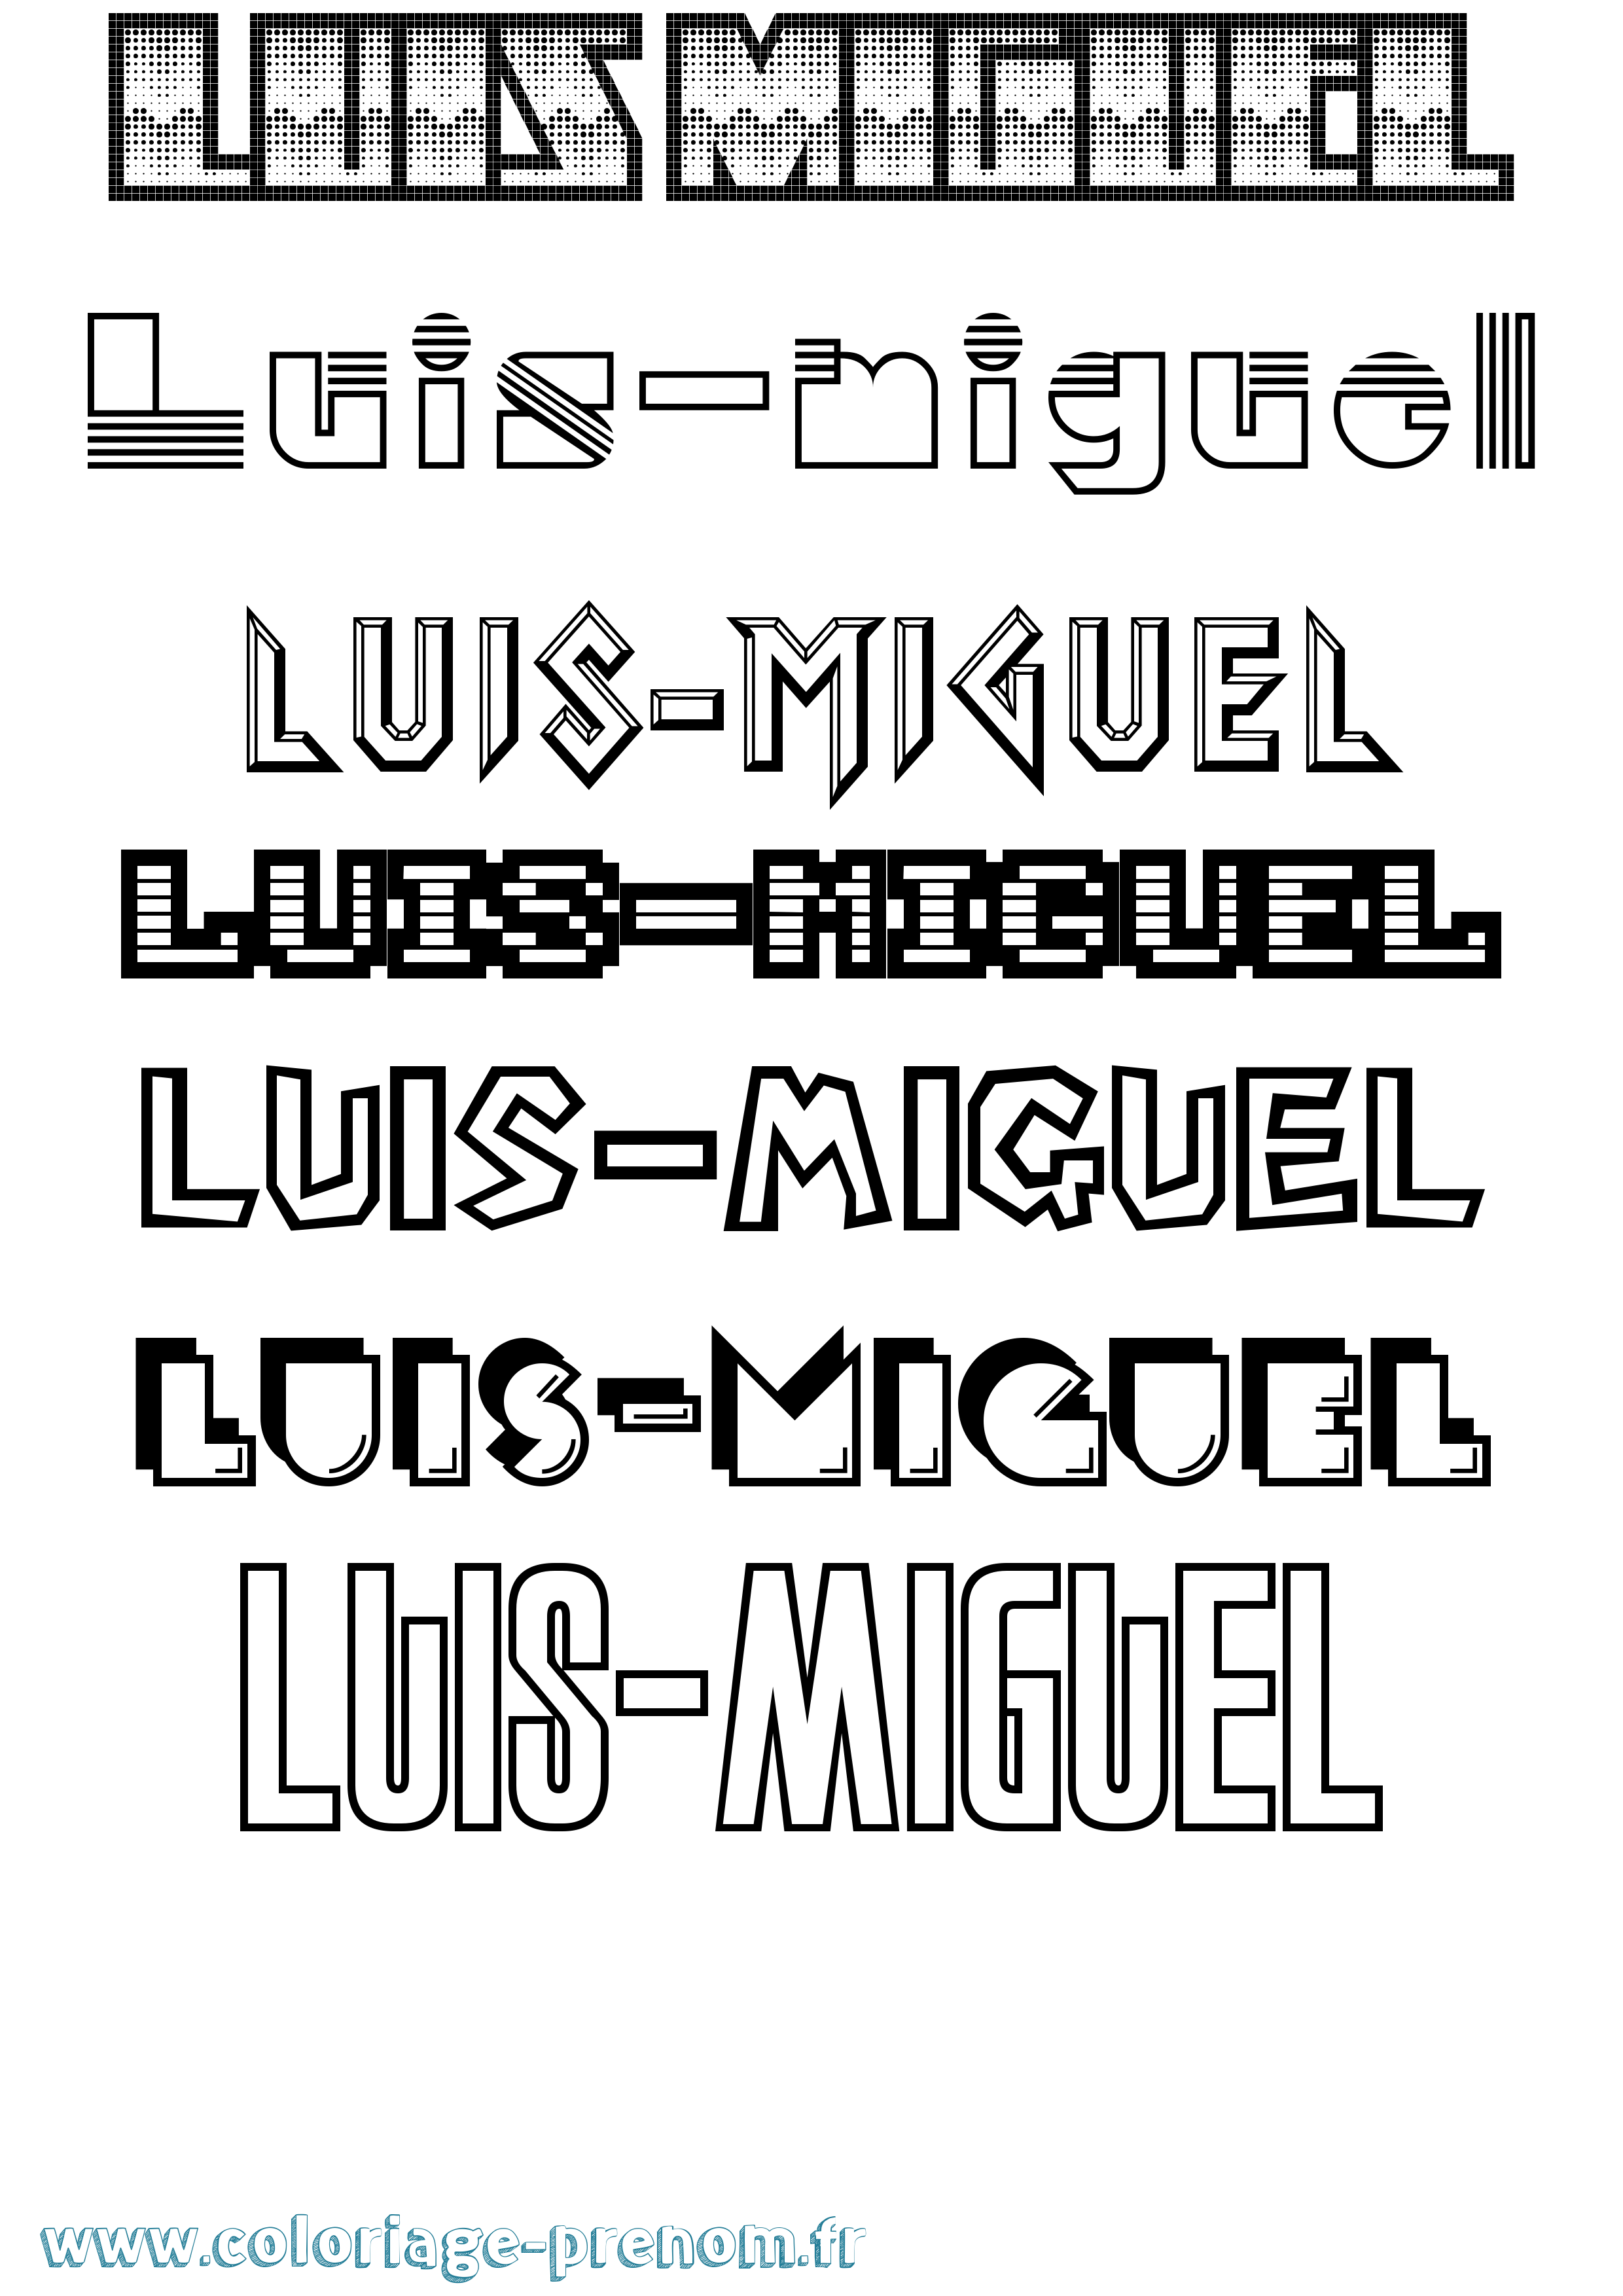 Coloriage prénom Luis-Miguel Jeux Vidéos